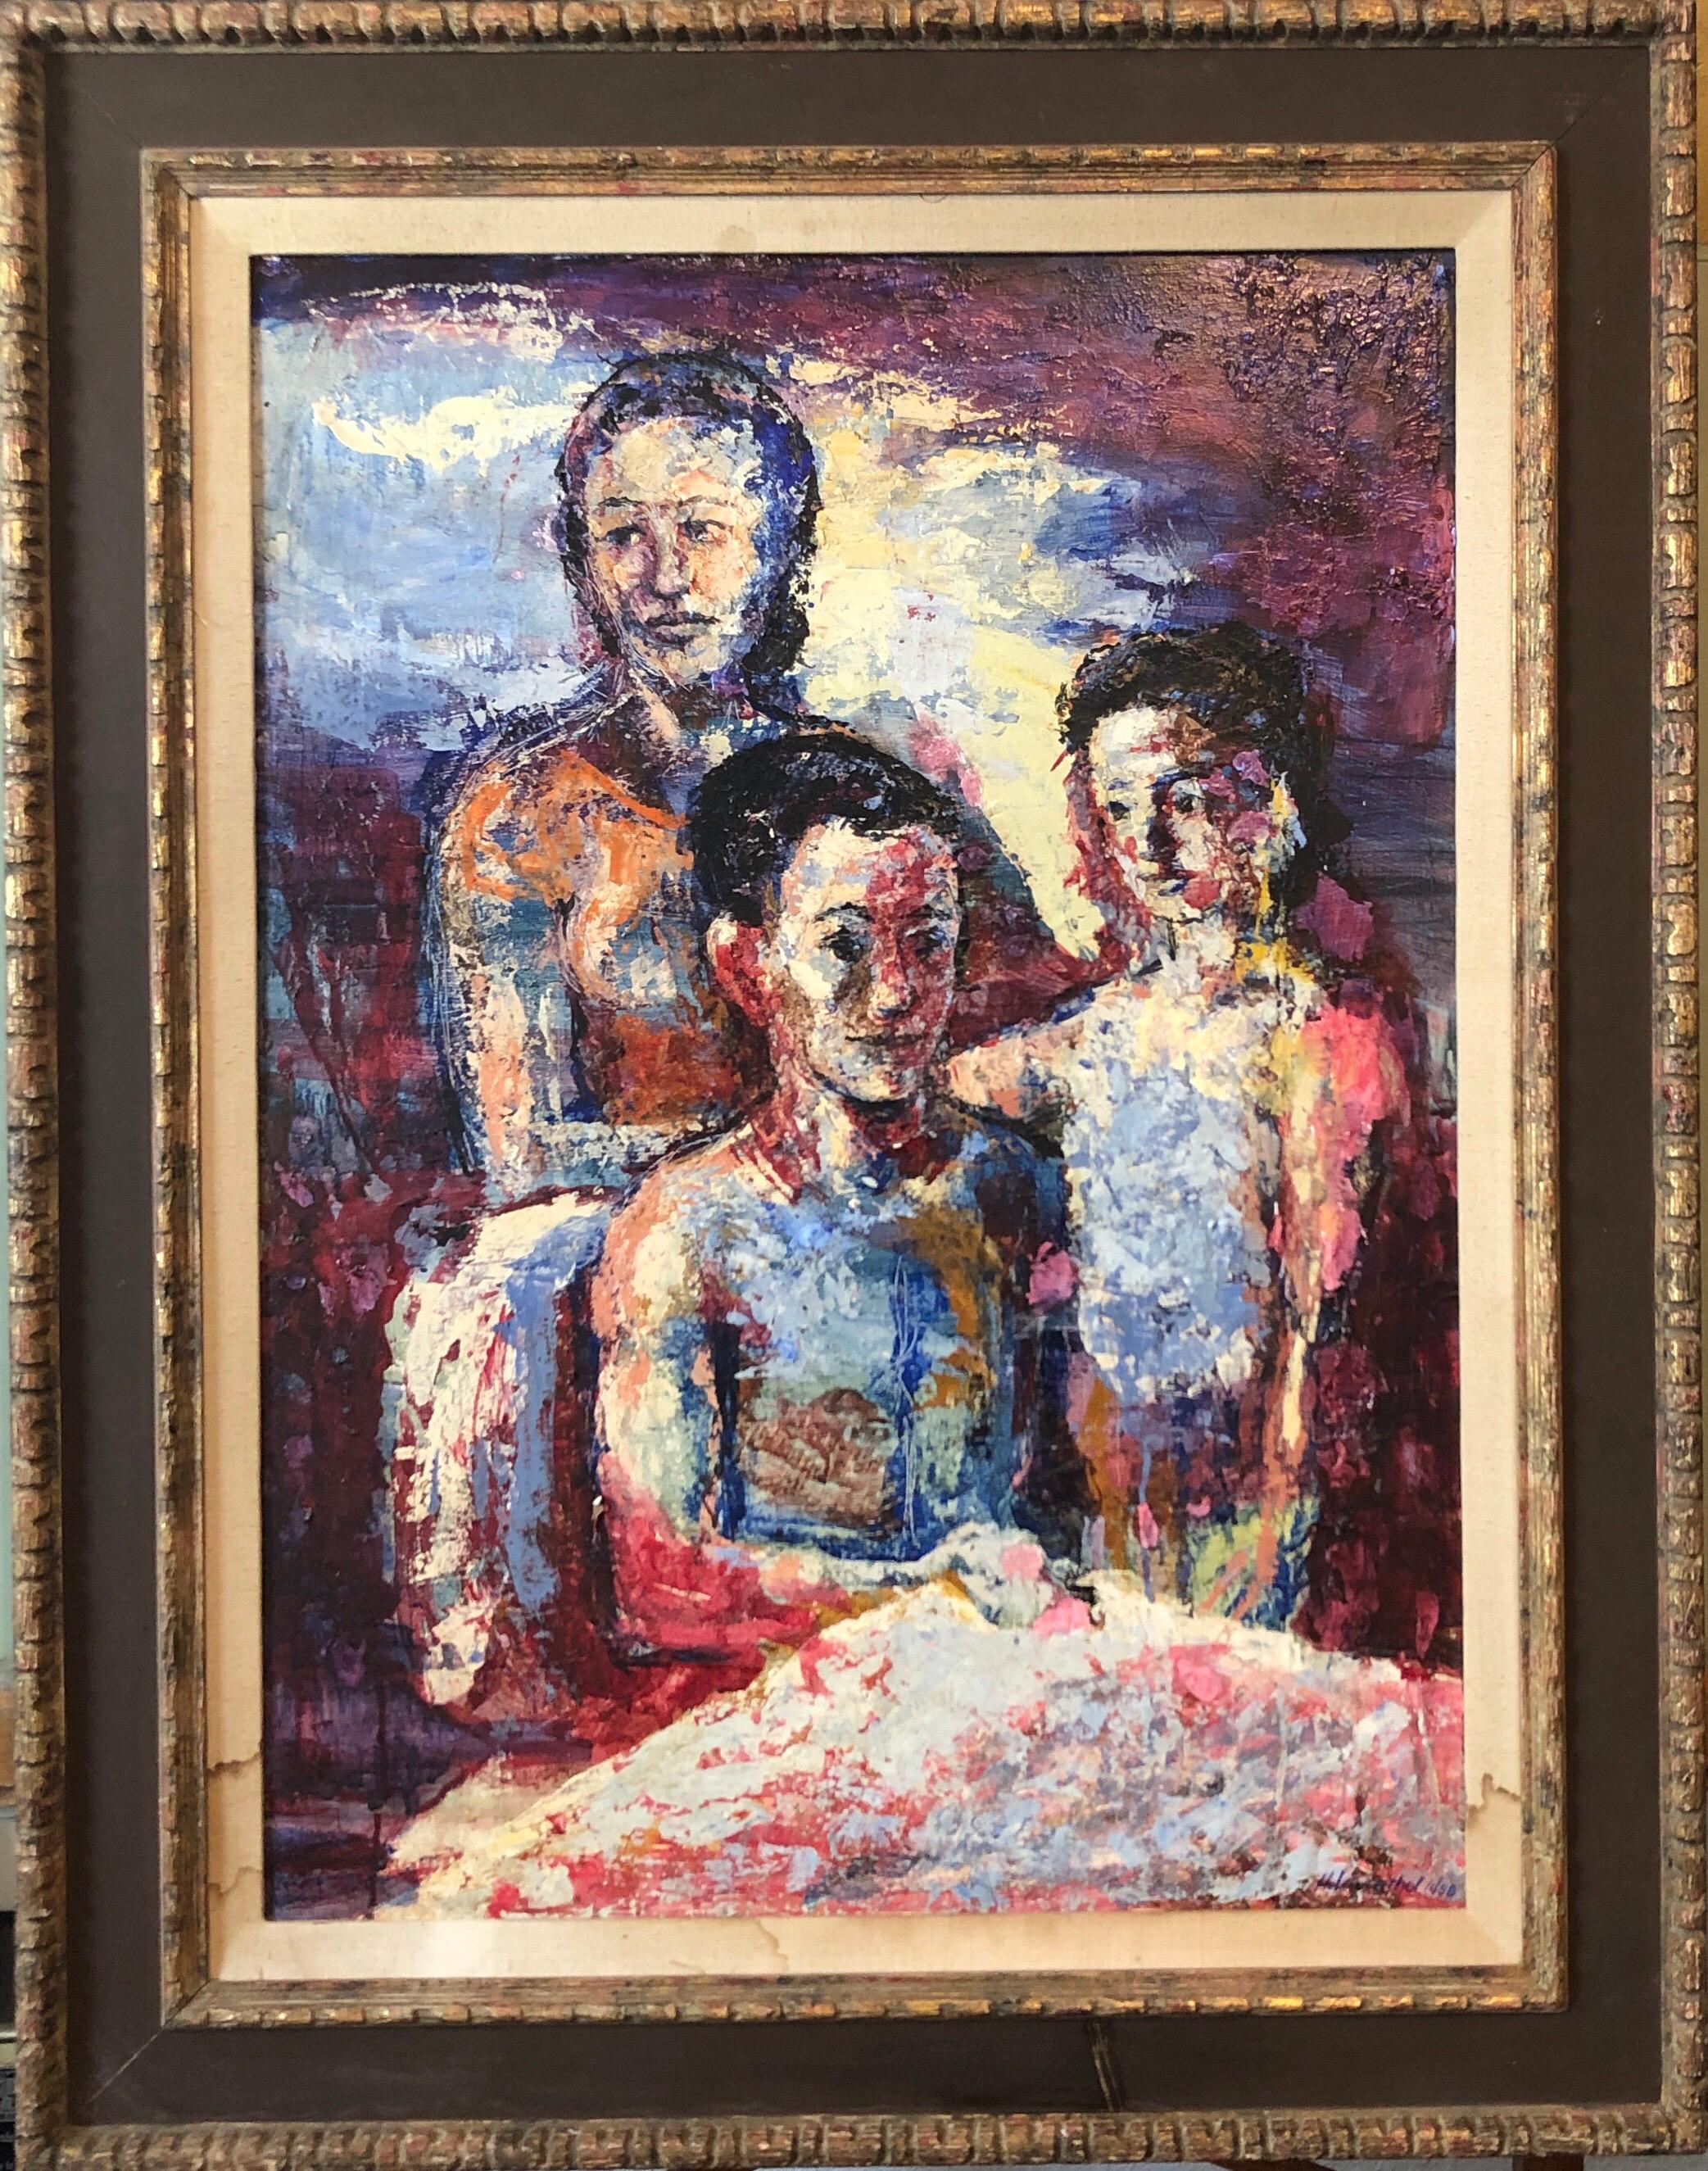 Hank Laventhol Figurative Painting - Family Portrait, Large Surrealist Oil Painting Mother, Children, Neo Surrealism